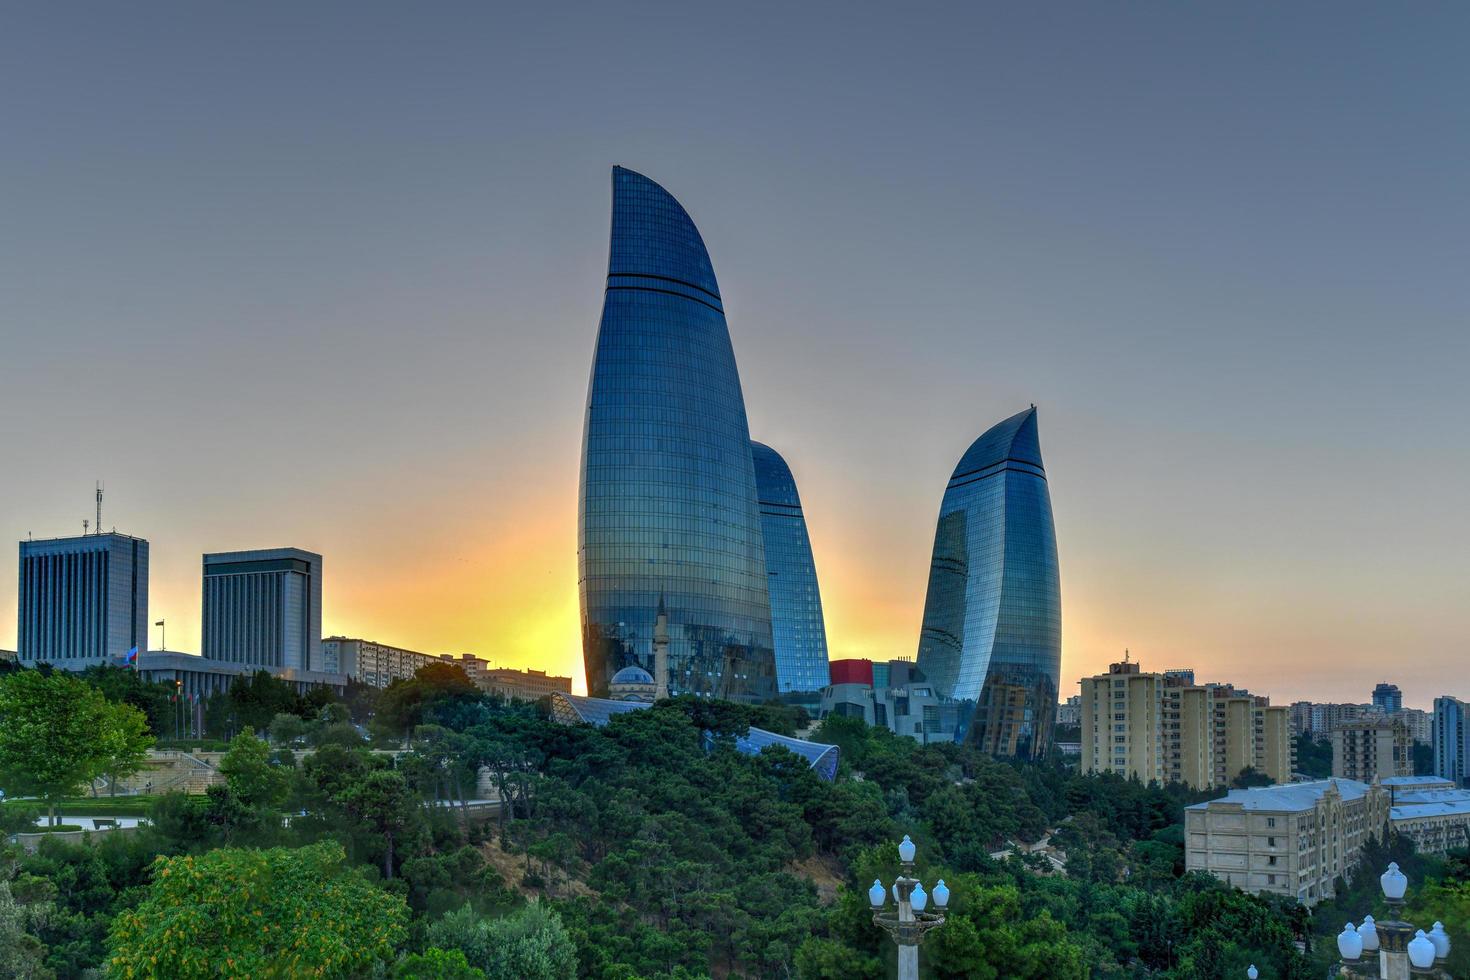 de flamma torn i baku, azerbajdzjan. en se av de stad horisont på en dramatiska solnedgång, 2022 foto